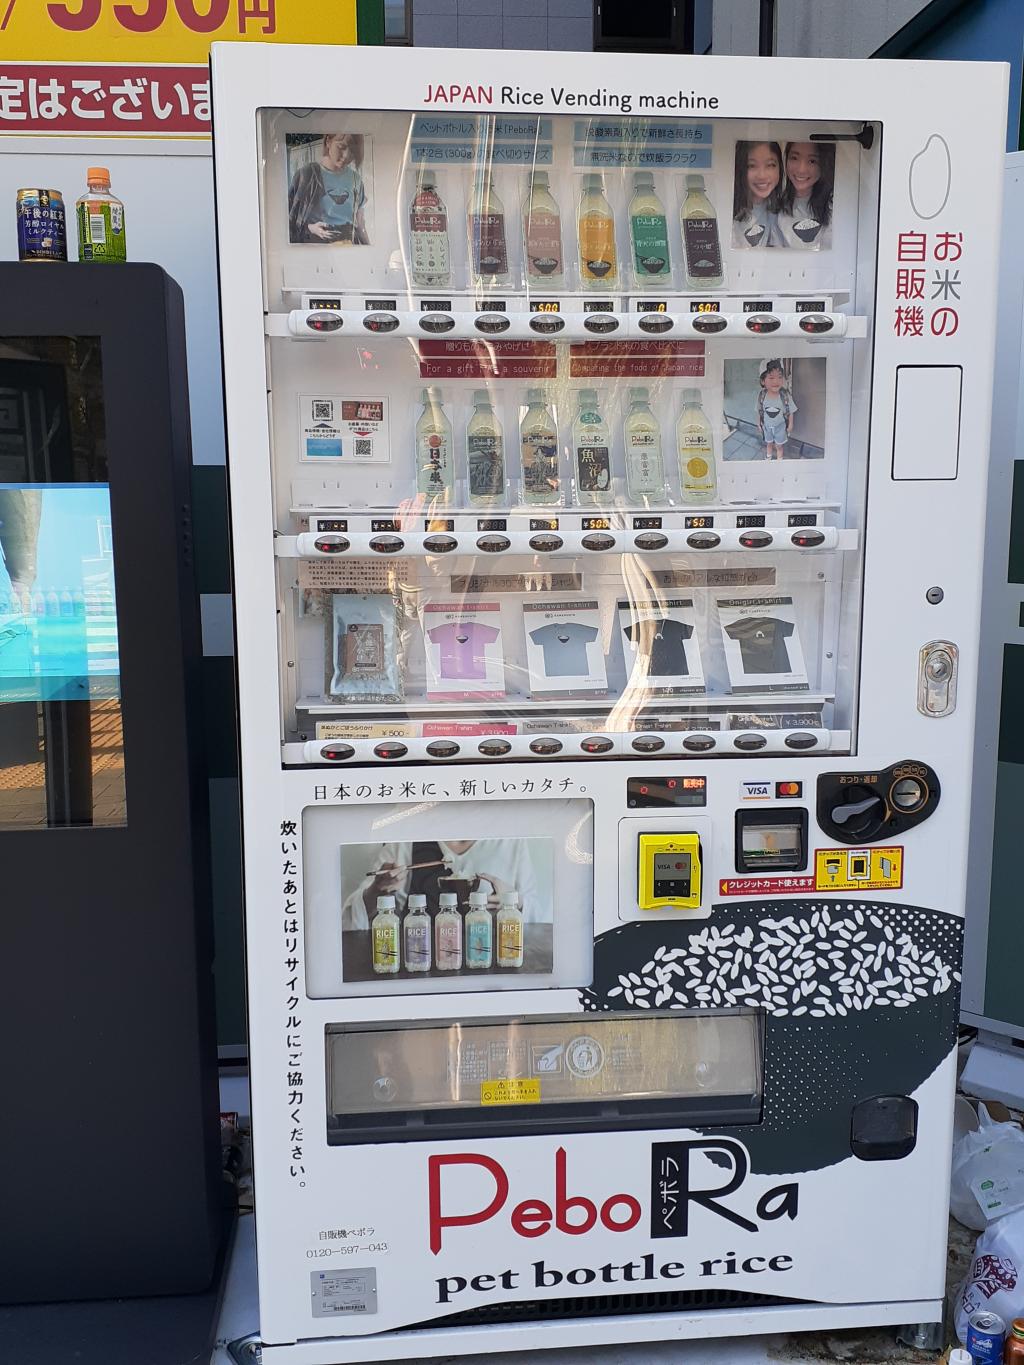 コンド ム 自販機 場所 兵庫県に設置されているおもしろ自動販売機6選 うどんや牡蠣 イチゴなどレアな自販機も